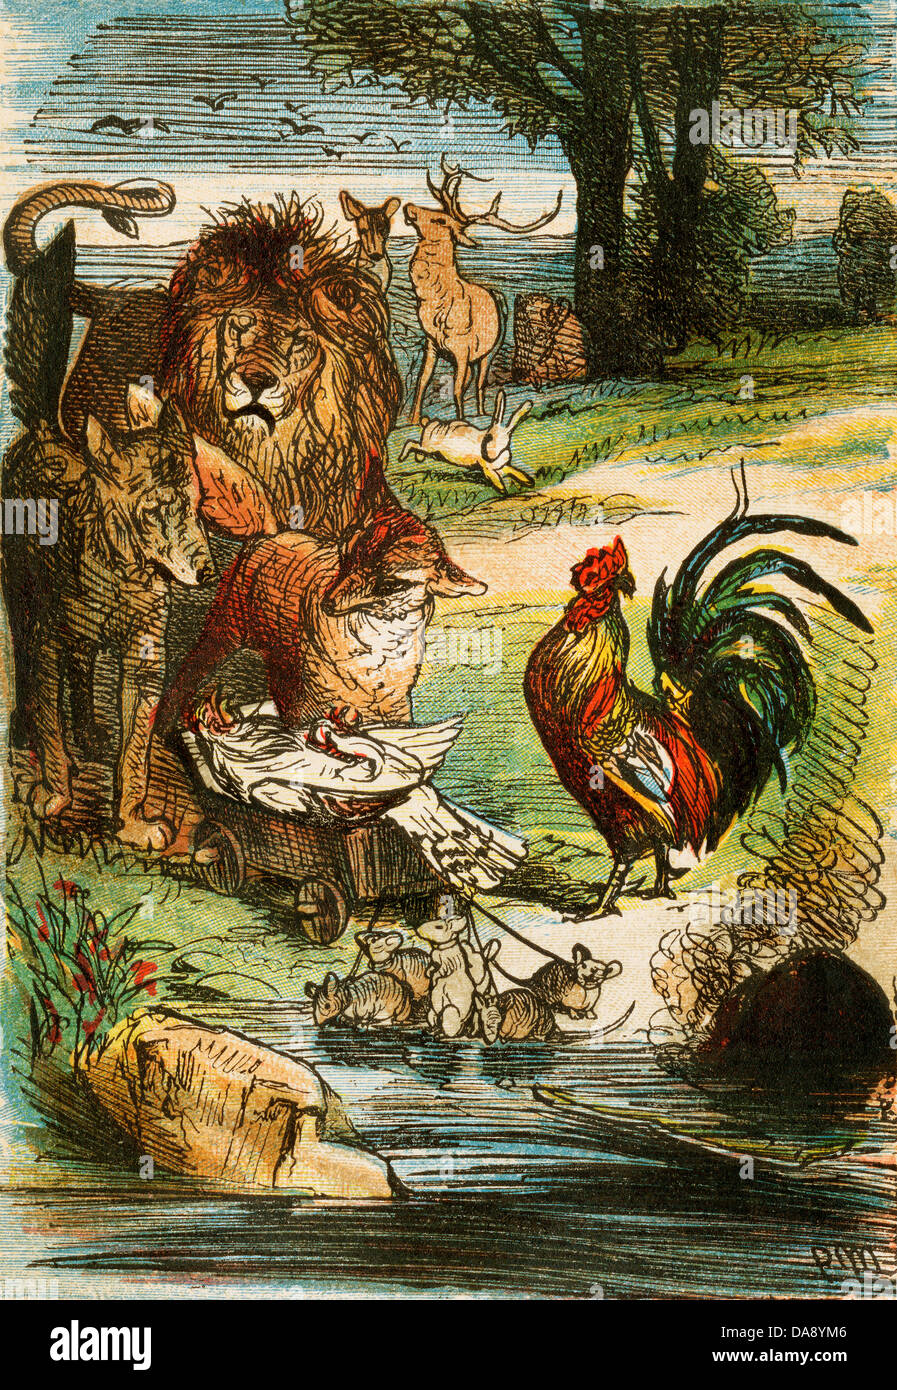 Muerte de un pollo, de una edición de Berlín Grimms' Cuentos de Hadas, 1865. Ilustración en color original Foto de stock